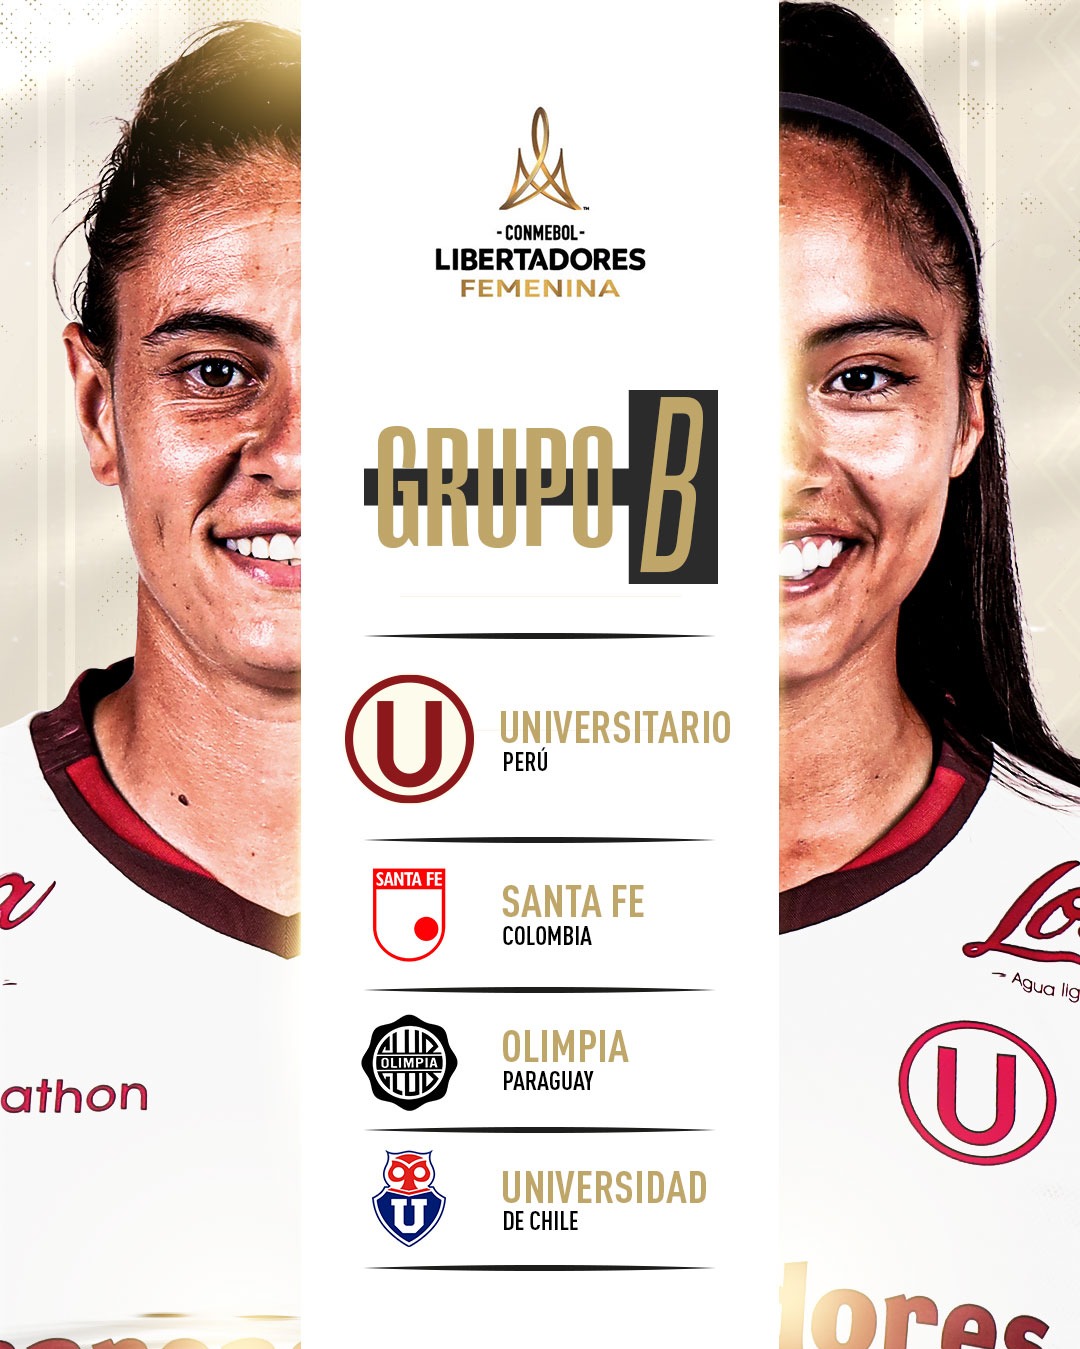 Los rivales de Universitario en el Grupo B de la Libertadores Femenina. | Fuente: @FutFemeninoU